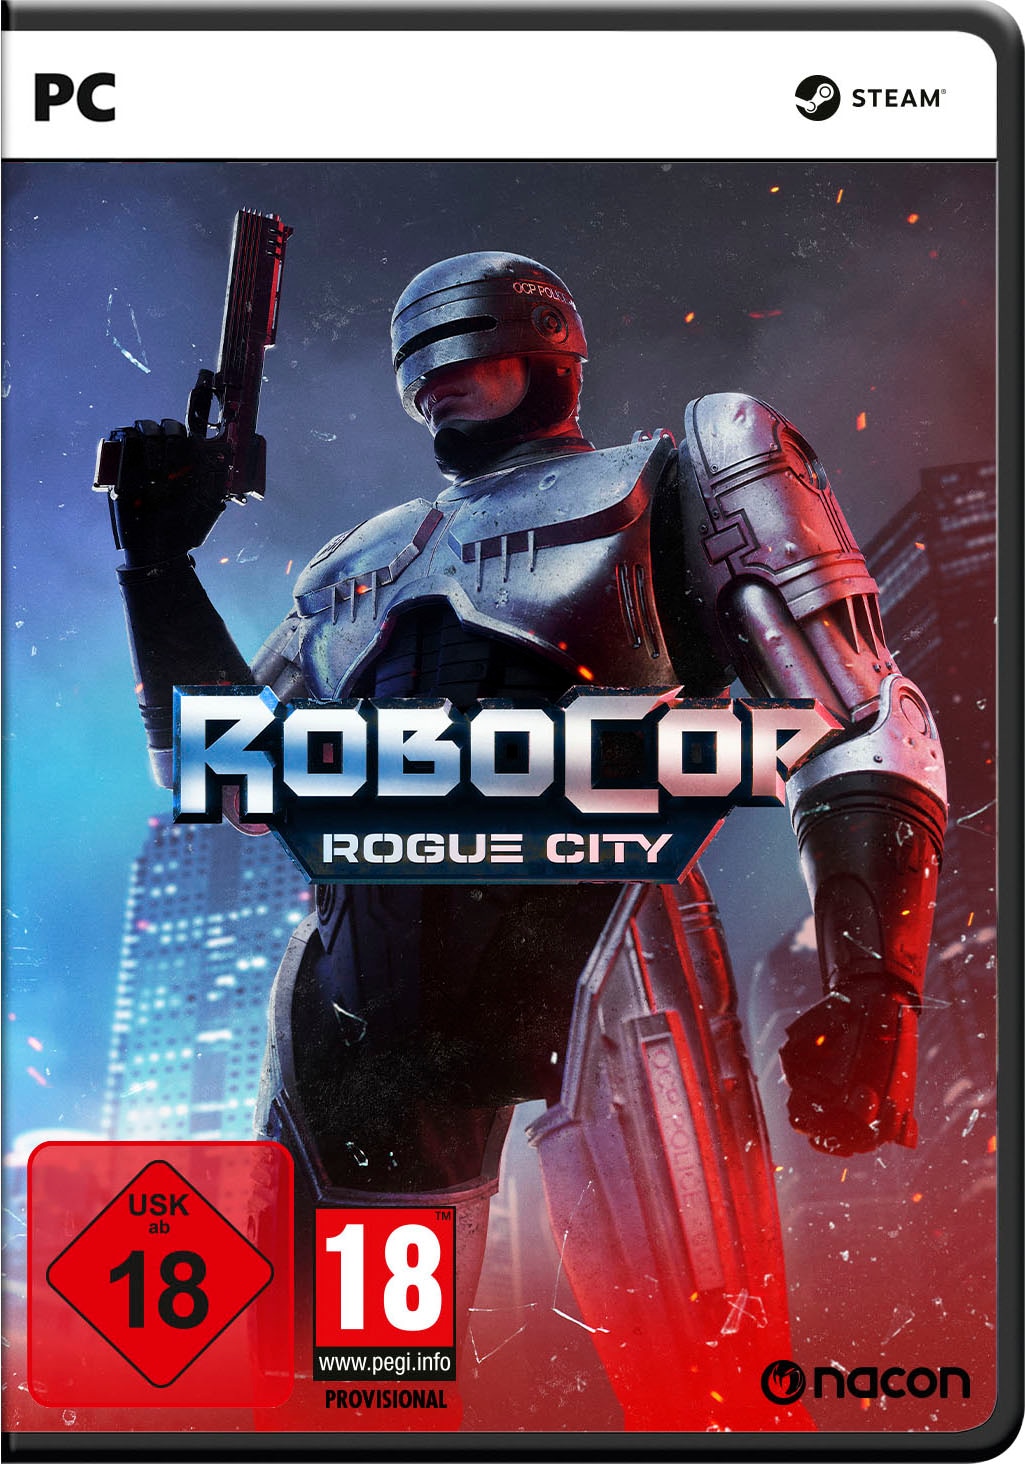 Spielesoftware »RoboCop: Rogue City«, PC